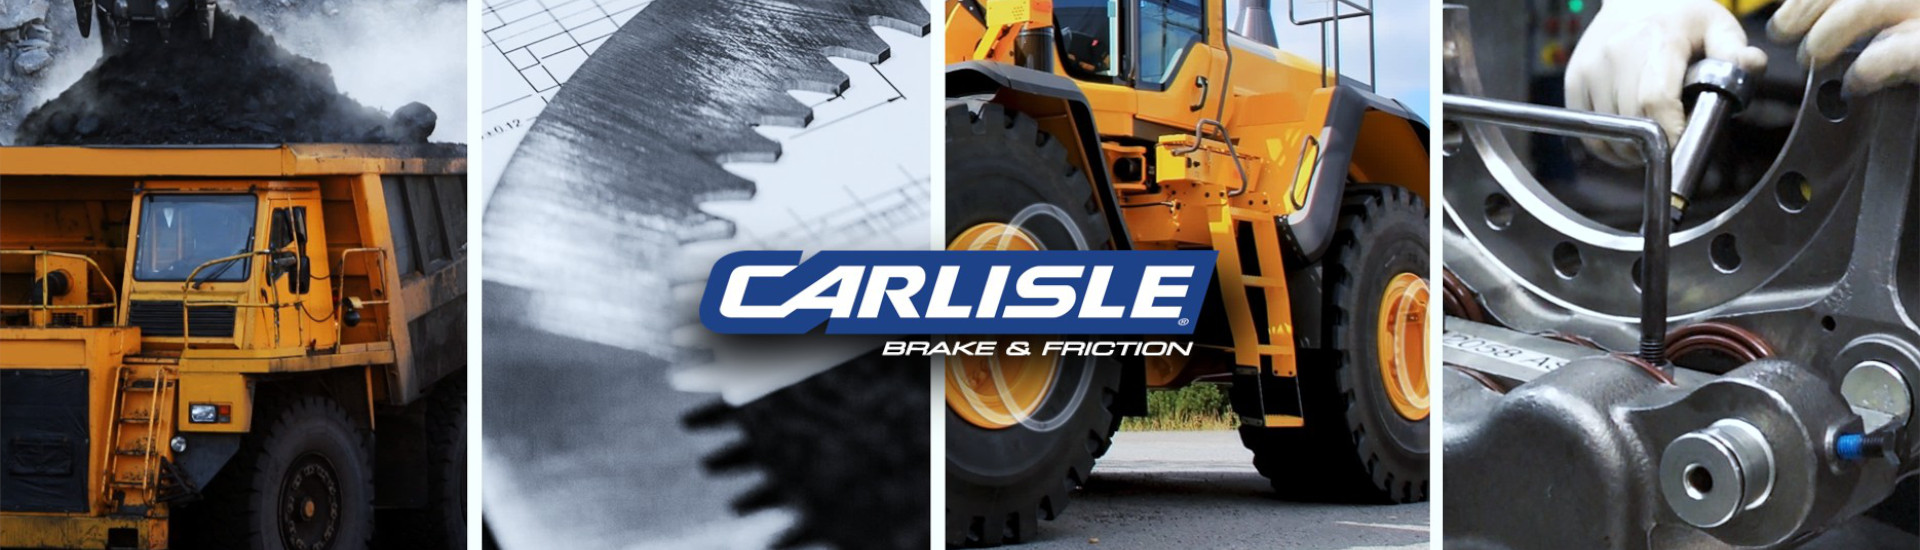 Carlisle Brakes & Friction Partnerships